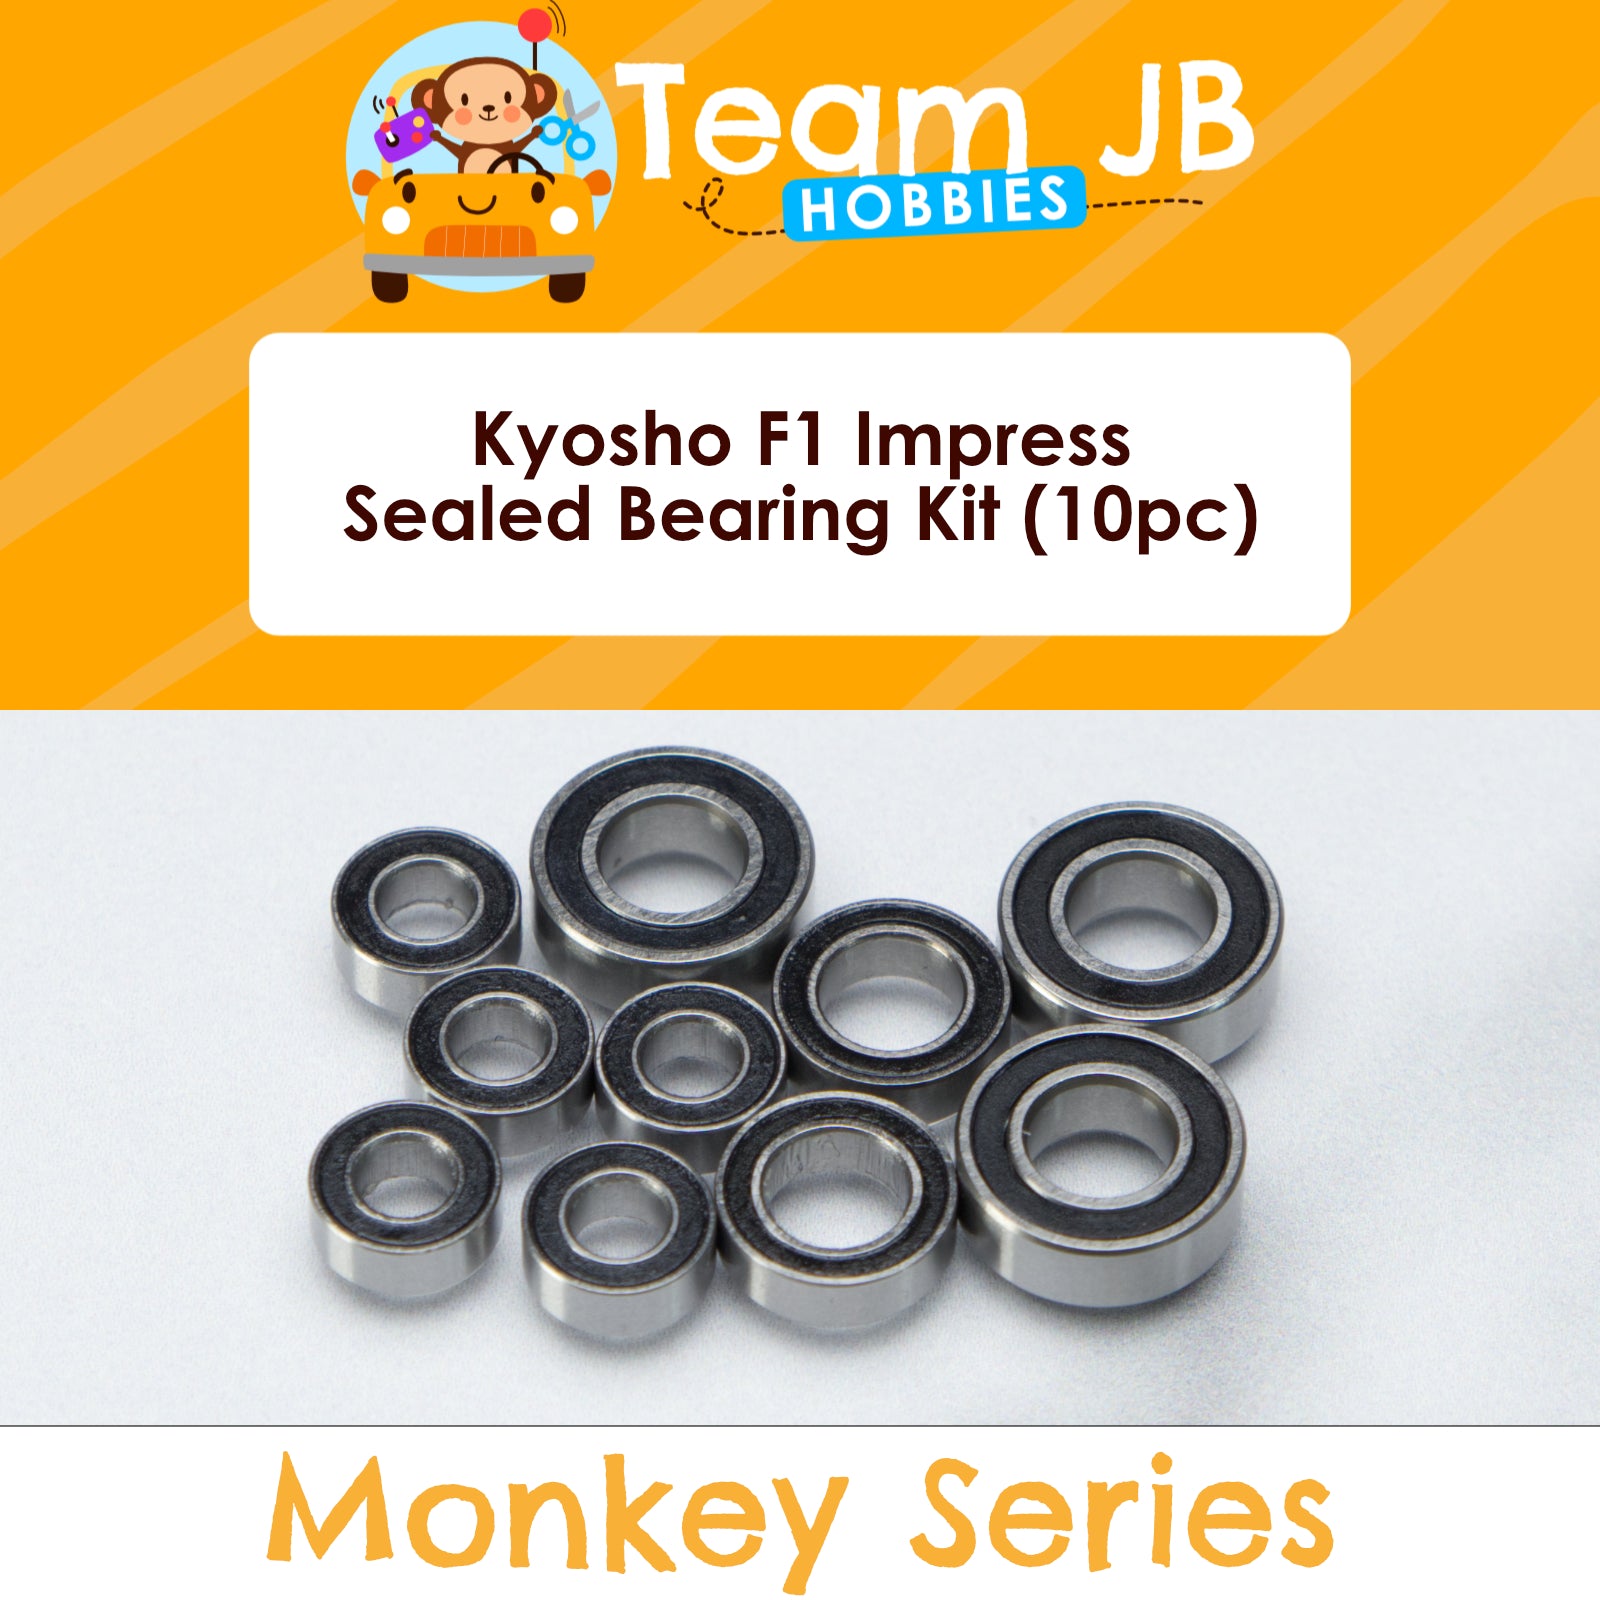 Kyosho F1 Impress - Sealed Bearing Kit